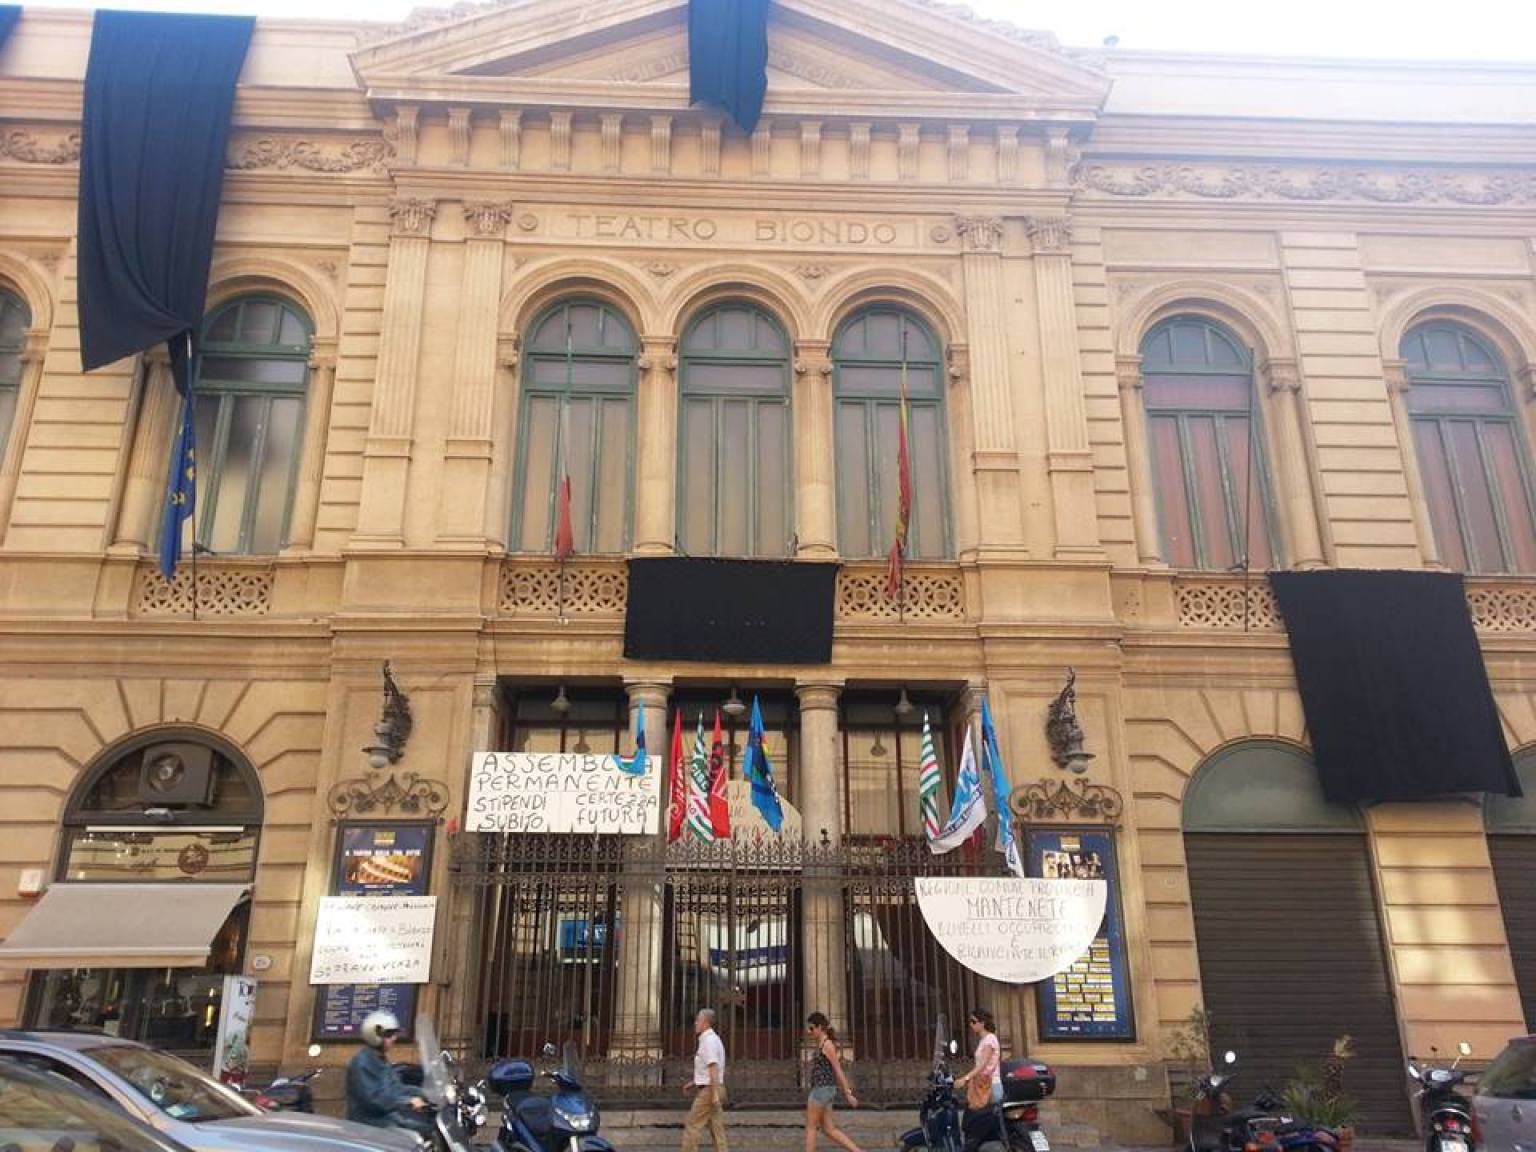 Palermo, il sindaco contesta lo sciopero di 9 giorni al Teatro Biondo